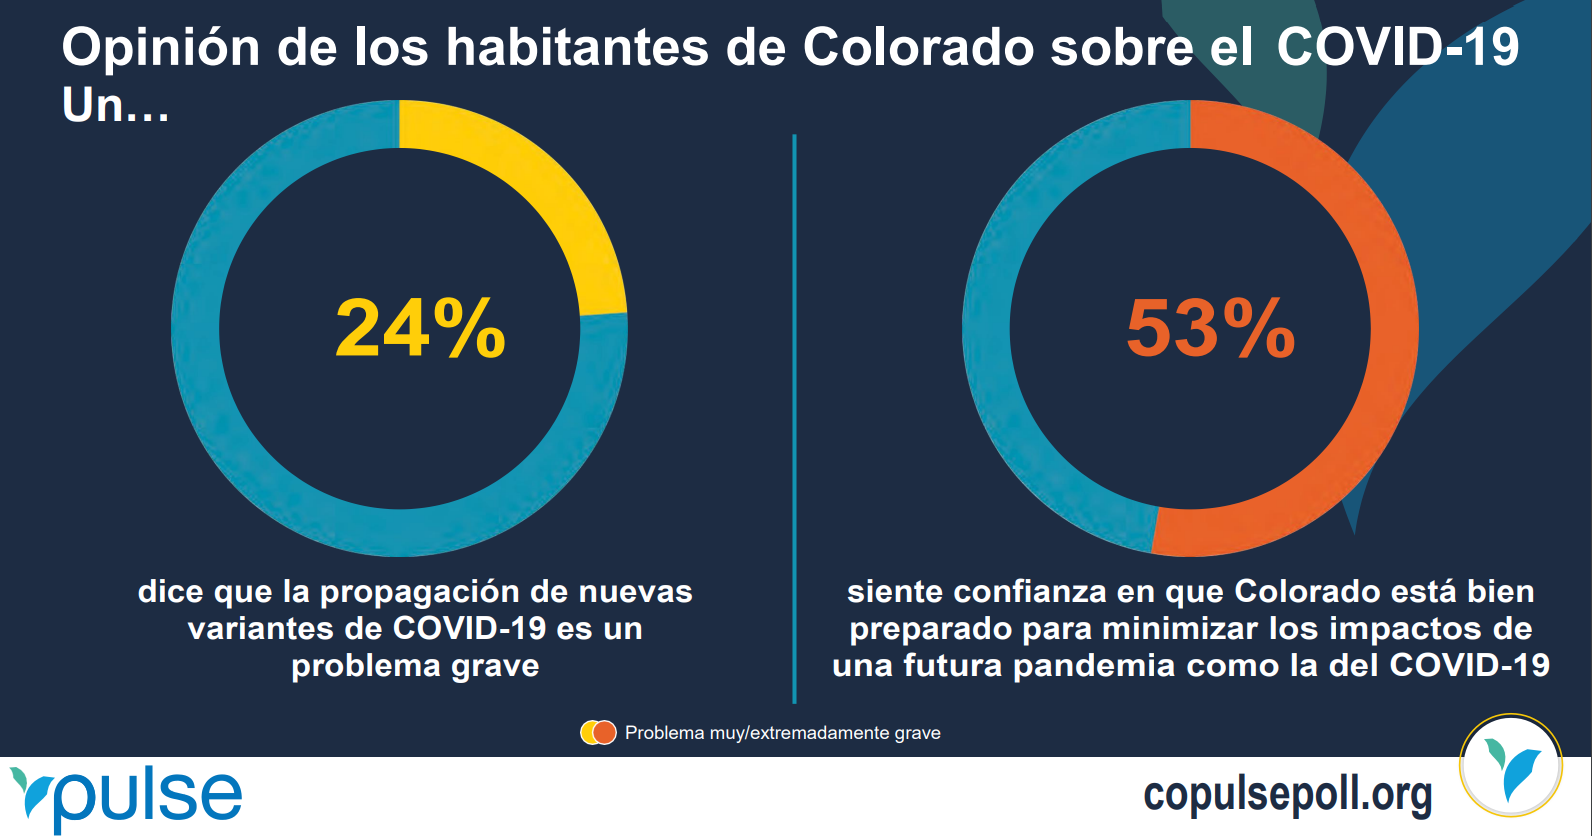 24% dice que la propagacion de nuevas variantes de COVID-19 es un problema grave